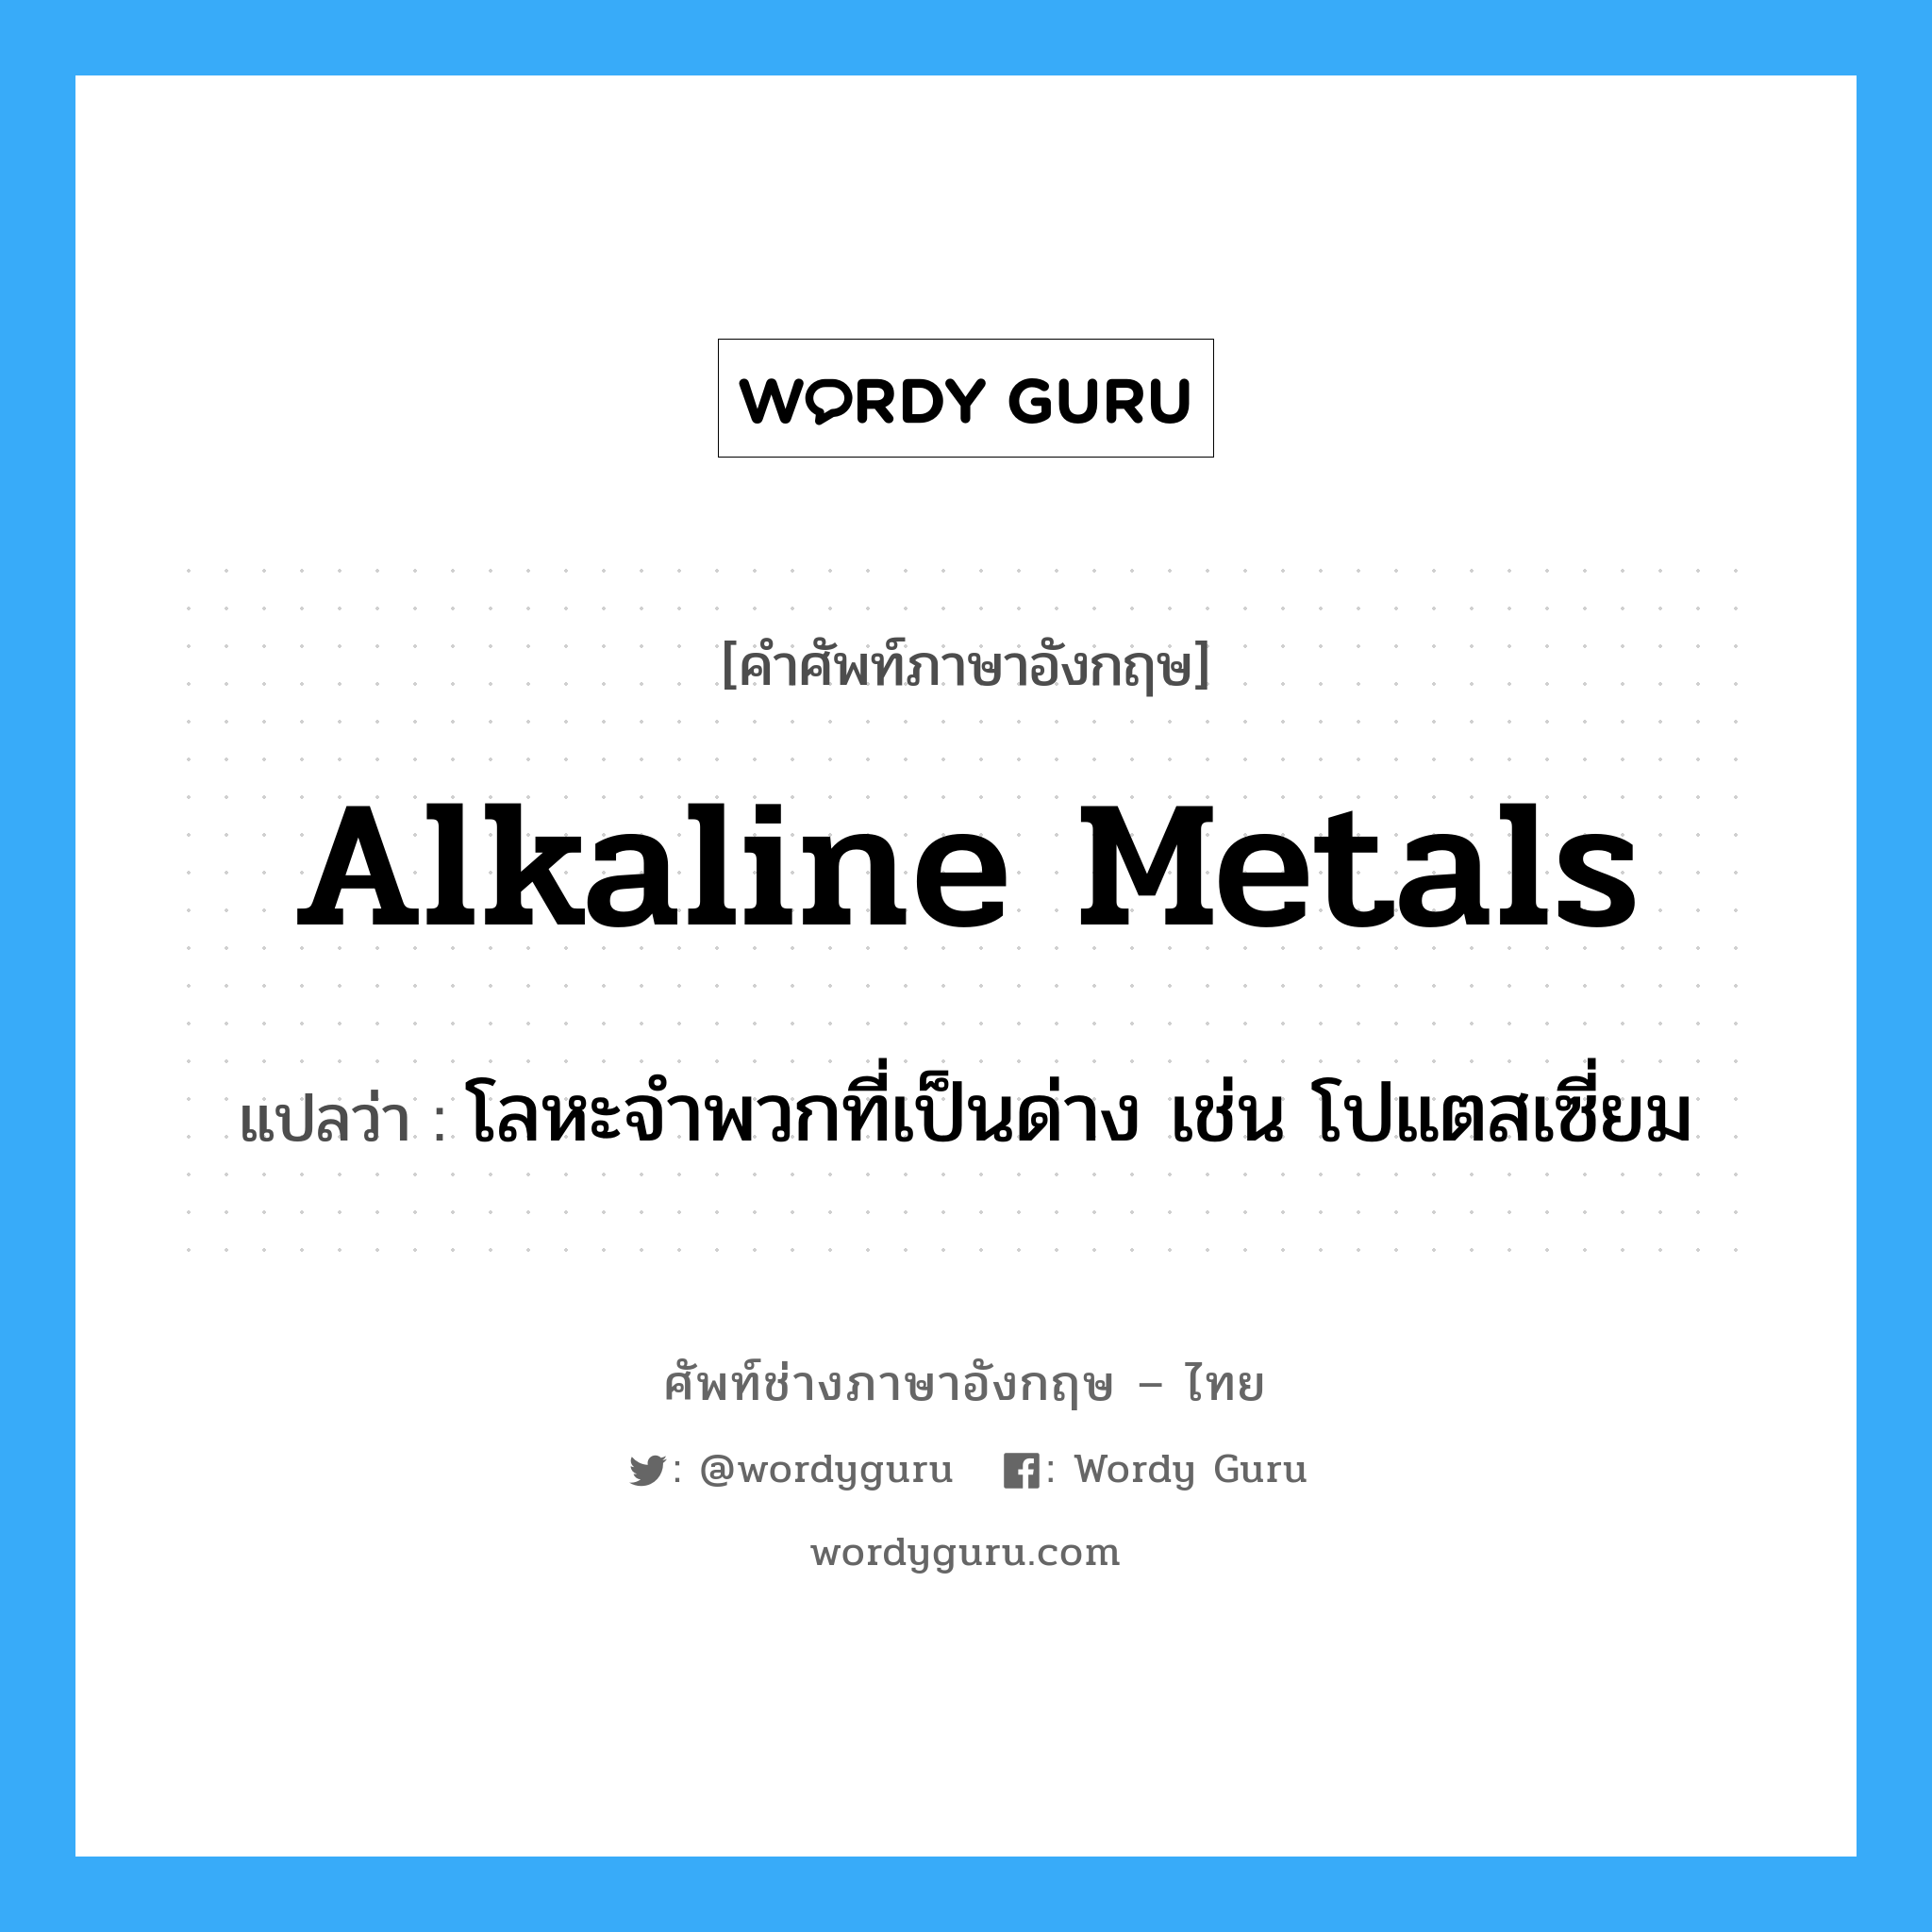 โลหะจำพวกที่เป็นด่าง เช่น โปแตสเซี่ยม ภาษาอังกฤษ?, คำศัพท์ช่างภาษาอังกฤษ - ไทย โลหะจำพวกที่เป็นด่าง เช่น โปแตสเซี่ยม คำศัพท์ภาษาอังกฤษ โลหะจำพวกที่เป็นด่าง เช่น โปแตสเซี่ยม แปลว่า alkaline metals